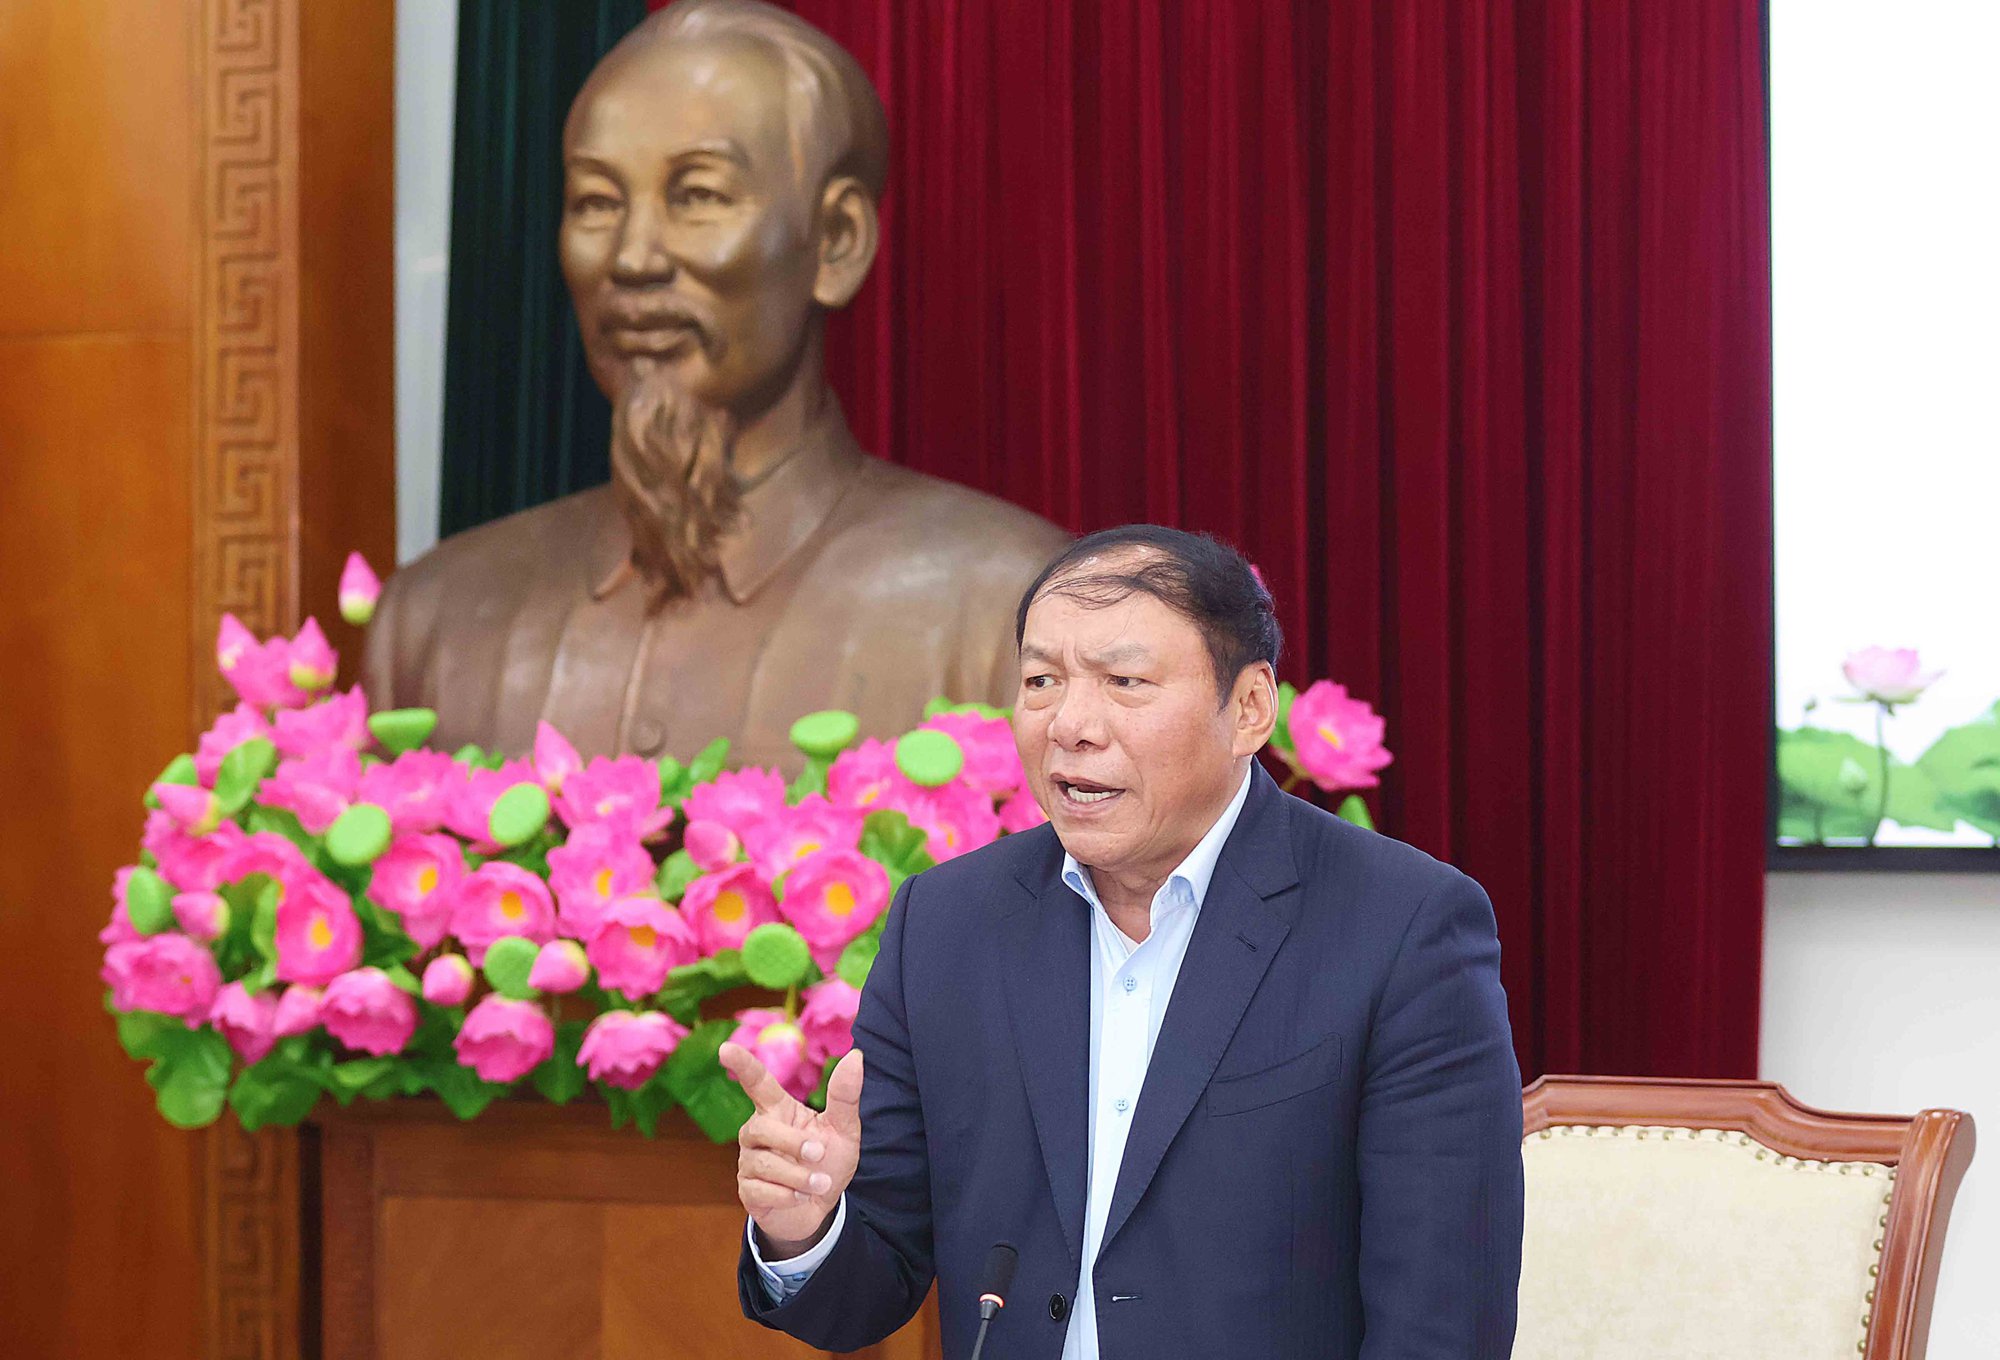 Bộ trưởng Nguyễn Văn Hùng: "Làm thể thao phải đi từ gốc chứ không cắt ngọn"